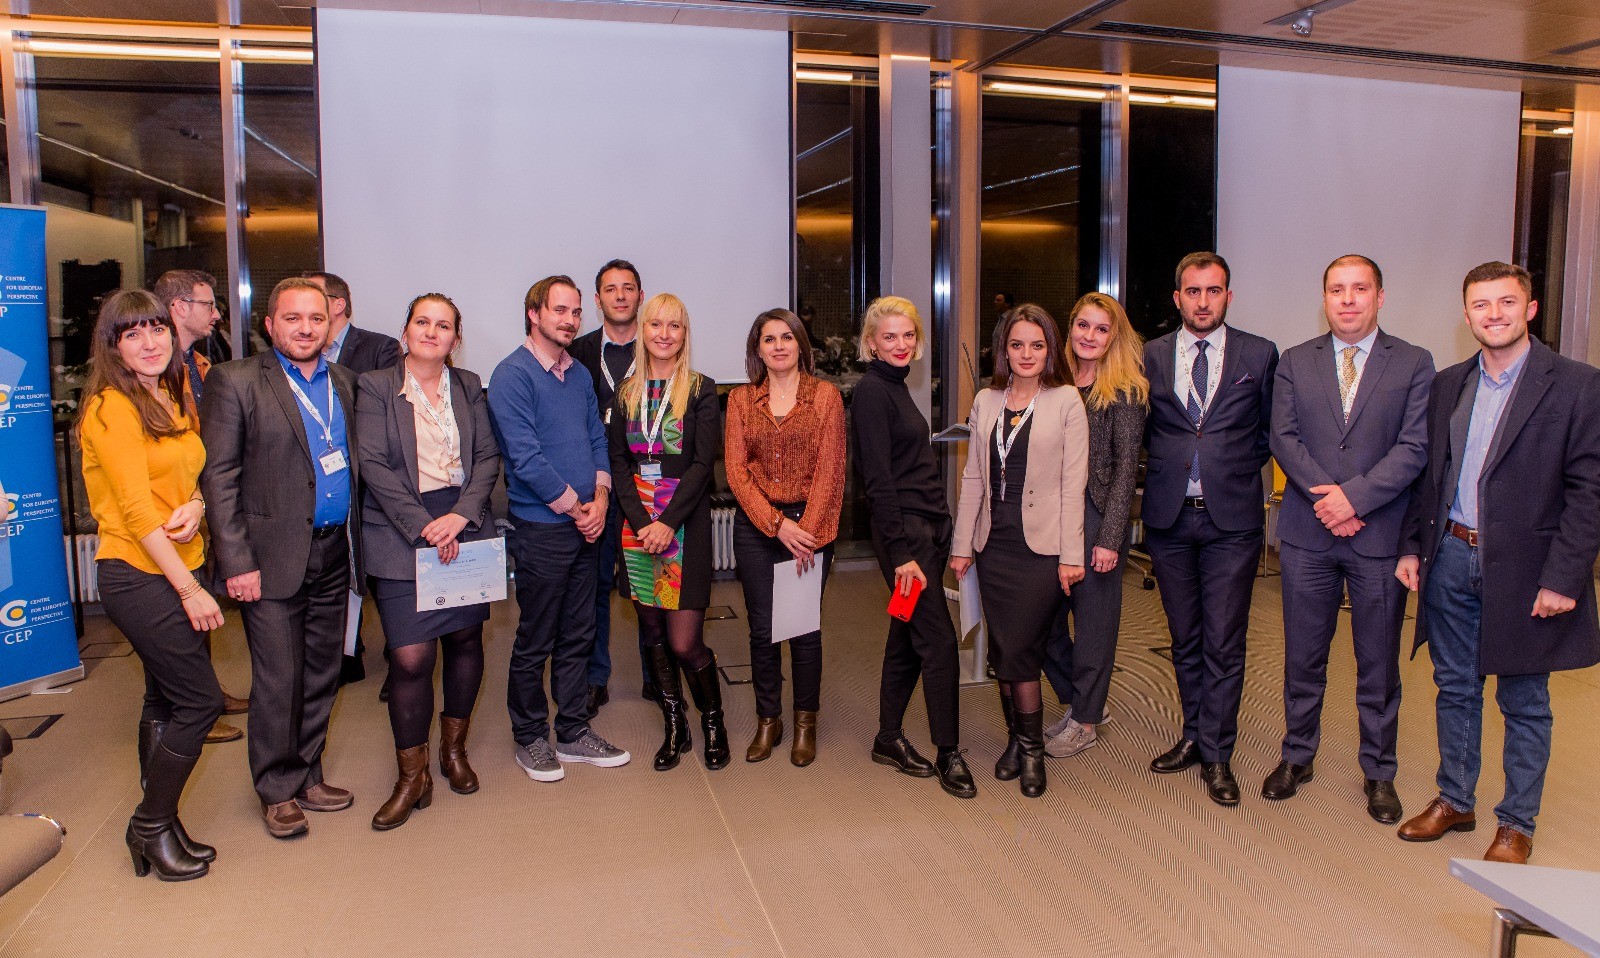 Përfaqësuesit nga Kosova në trajnimin mbi diplomacinë dixhitale  